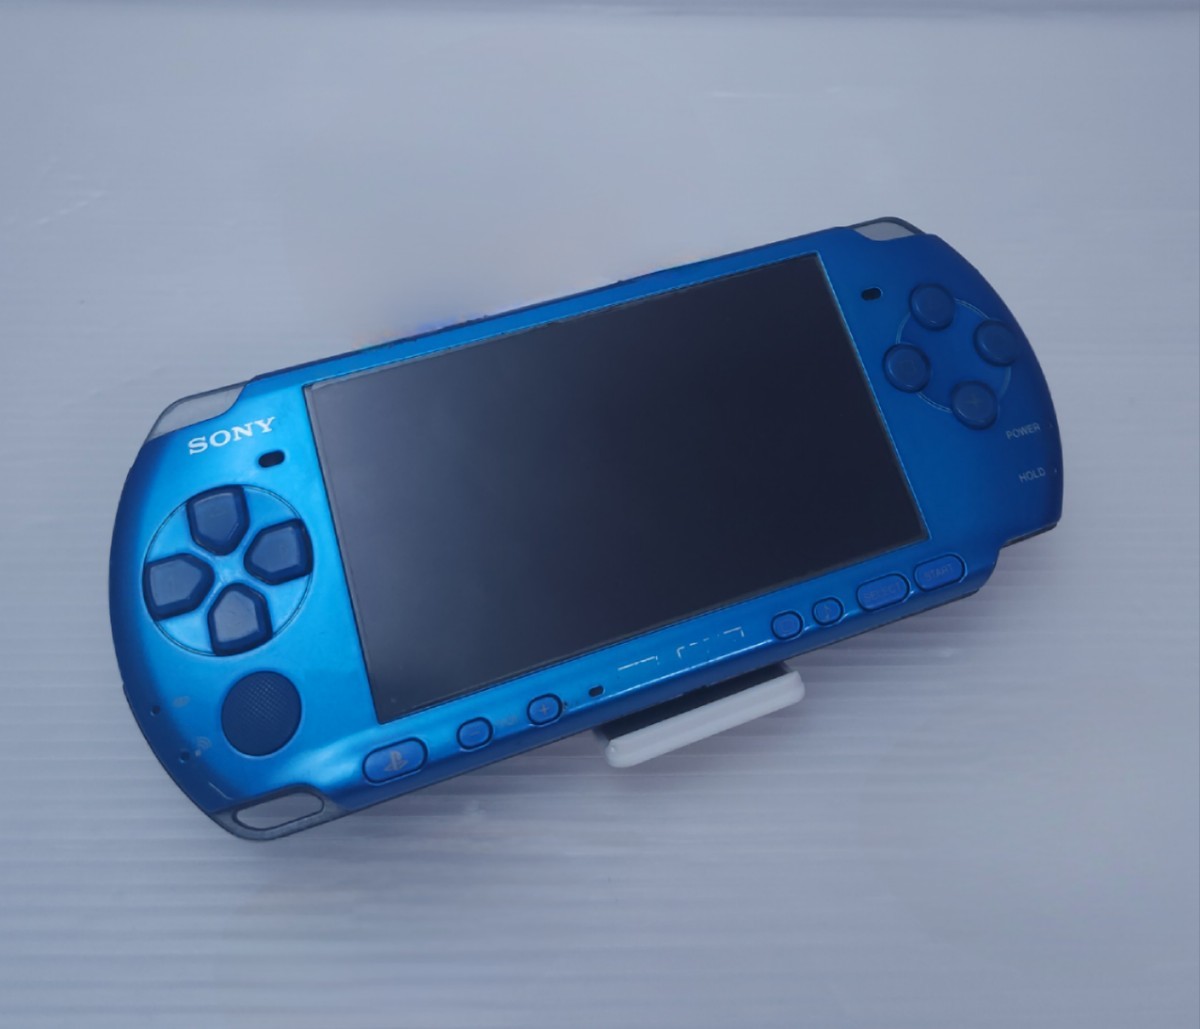 上等な PSP-3000 SONY 送料無料 VB ,希少品(D1)働すが、いくつかの